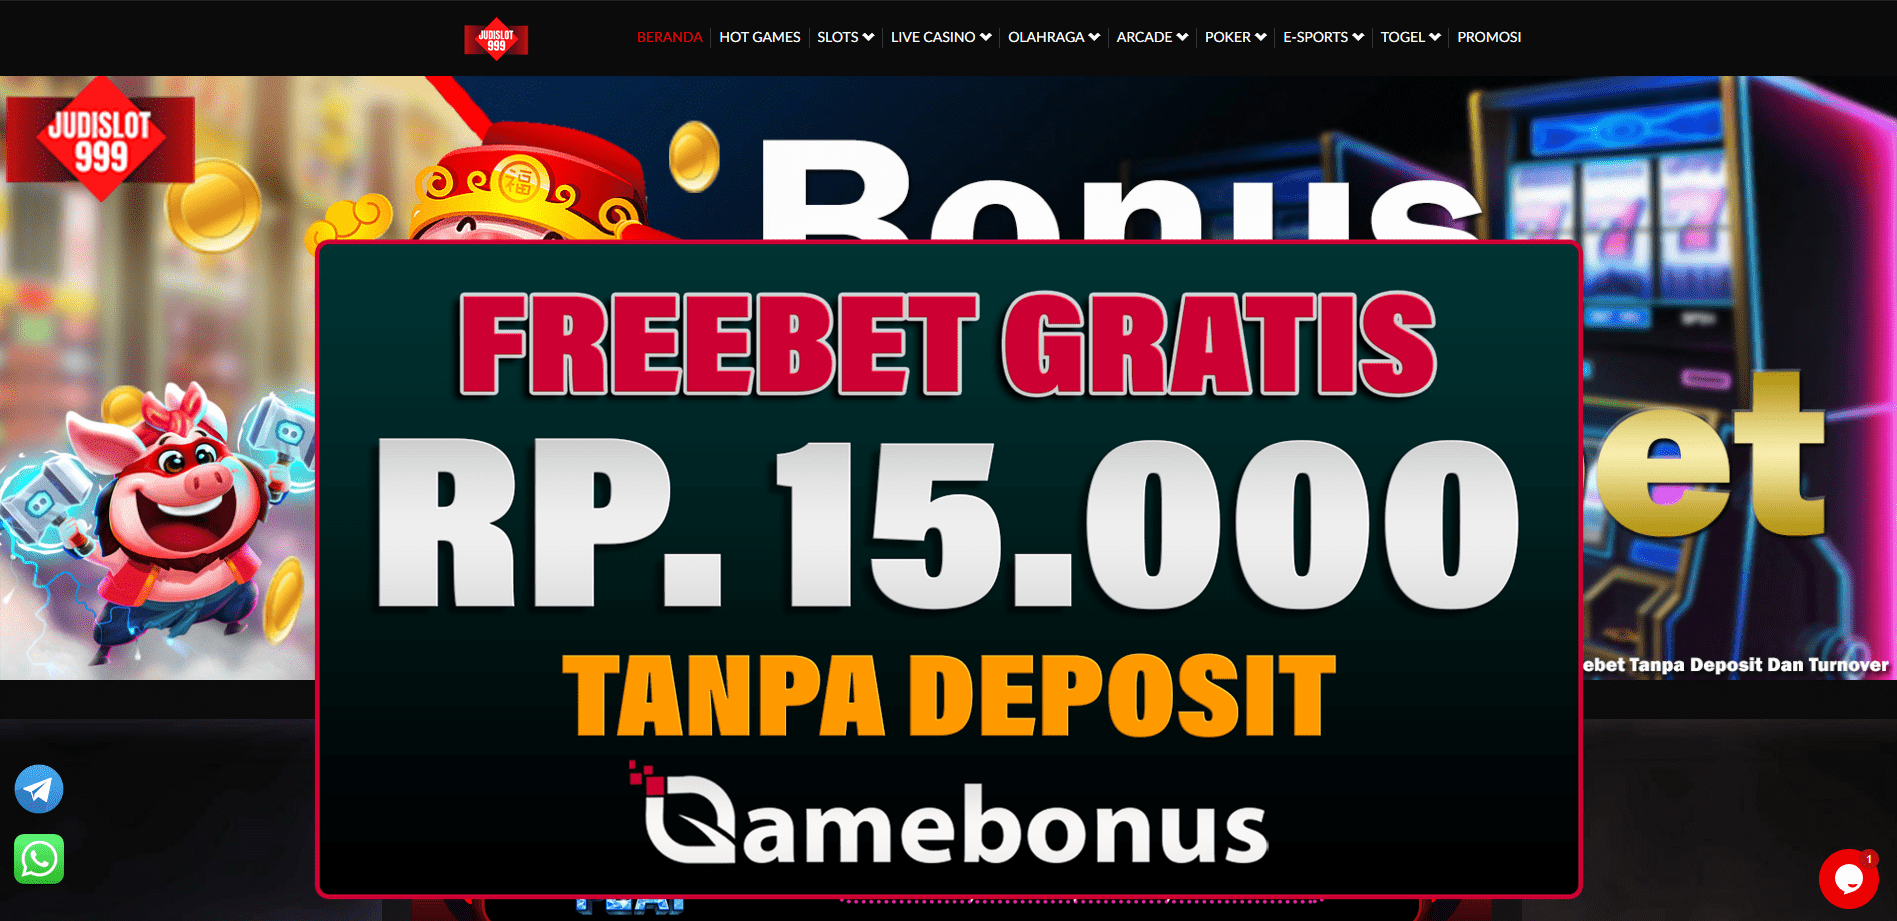 Judislot999 Bonus Saldo Freebet 15.000 Gratis Terbaru Setiap Hari